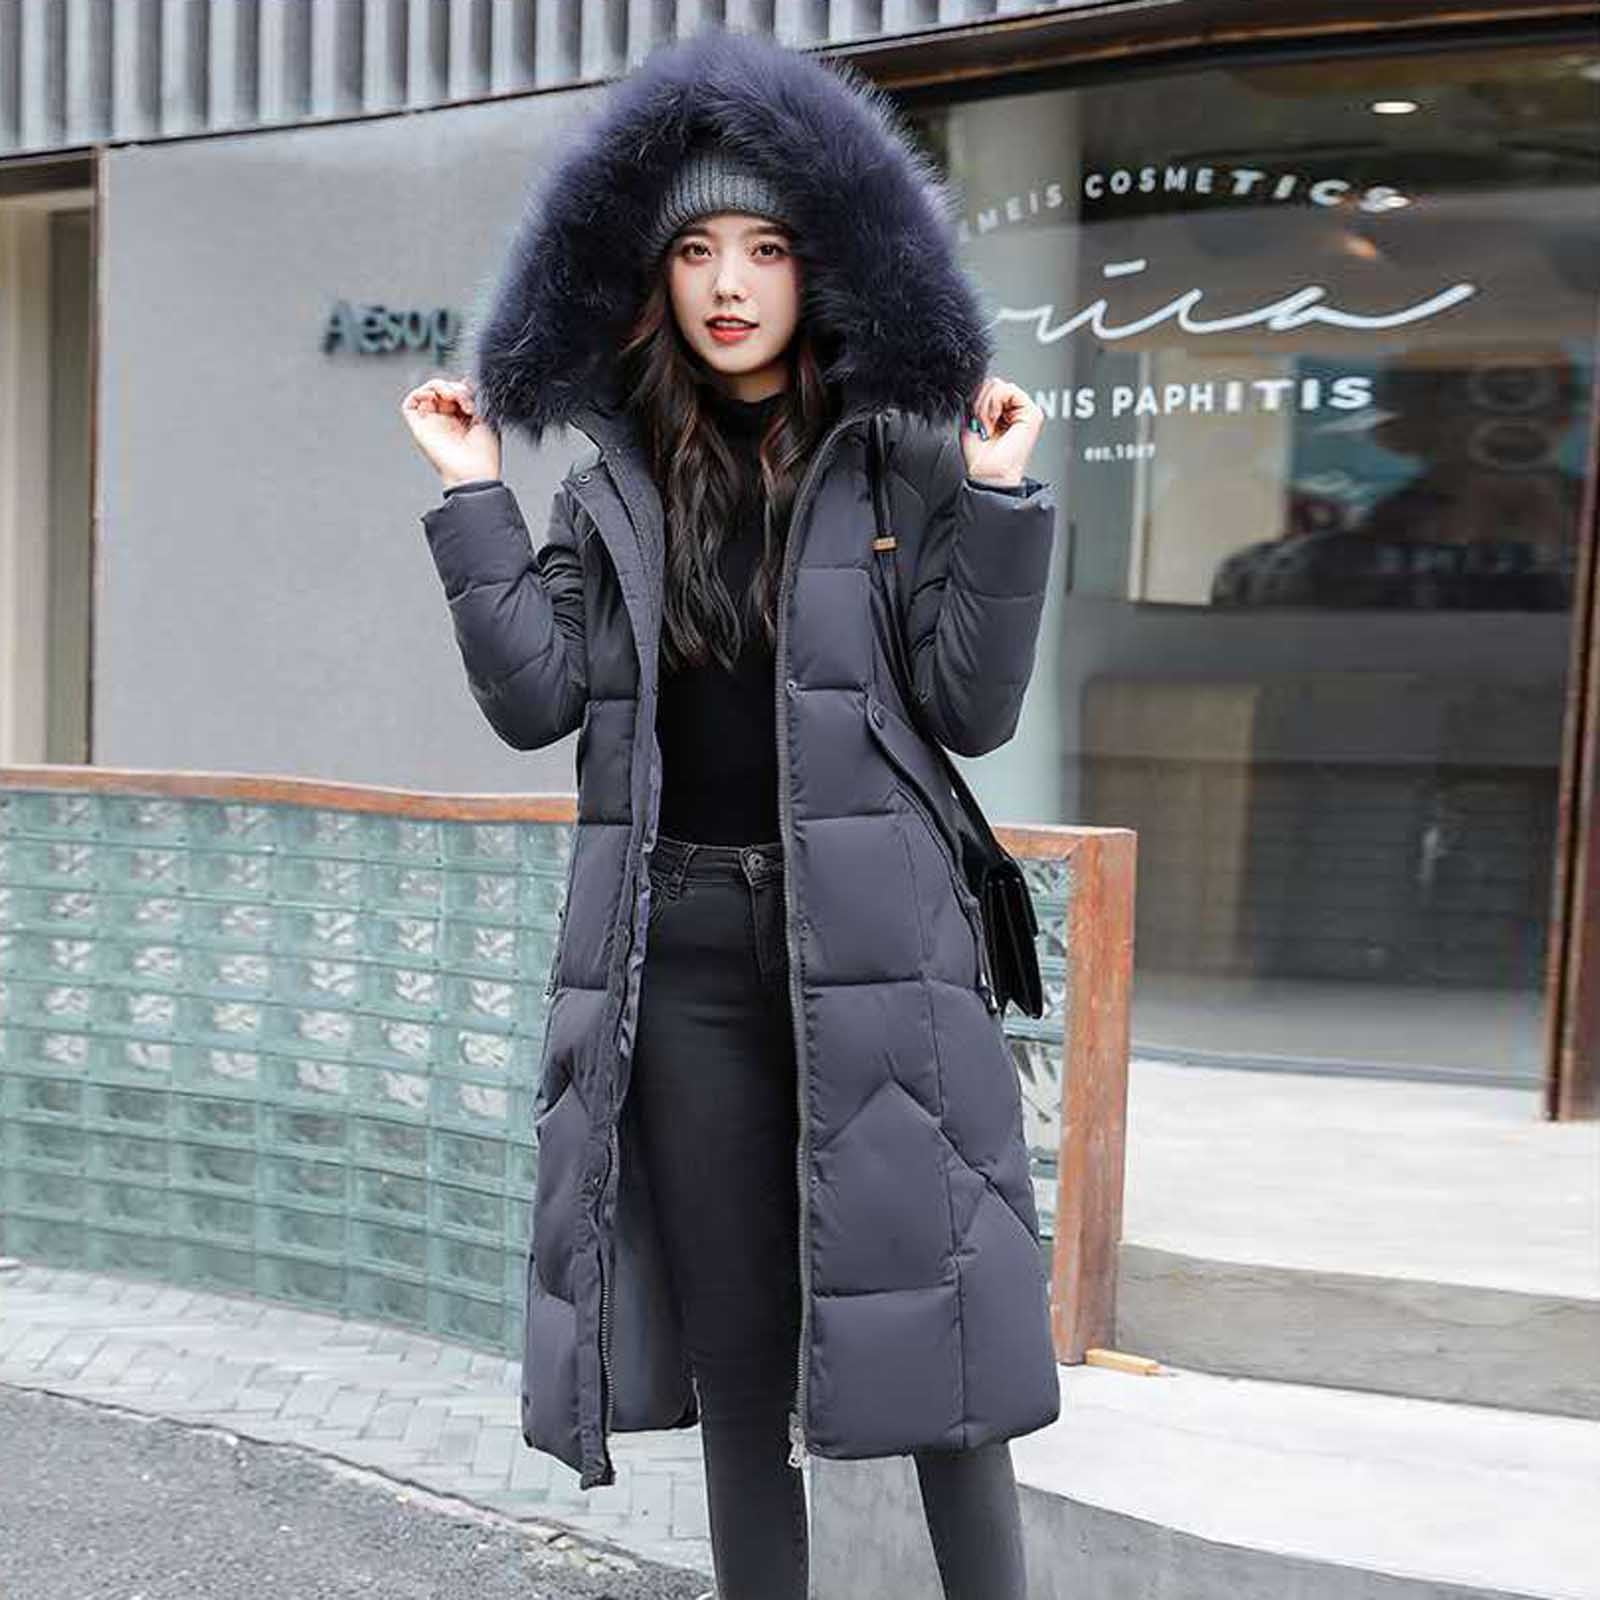 Women Winter Warm Slim Coat Jacket Trench Fur Thick Long Parka Overcoat Outwear